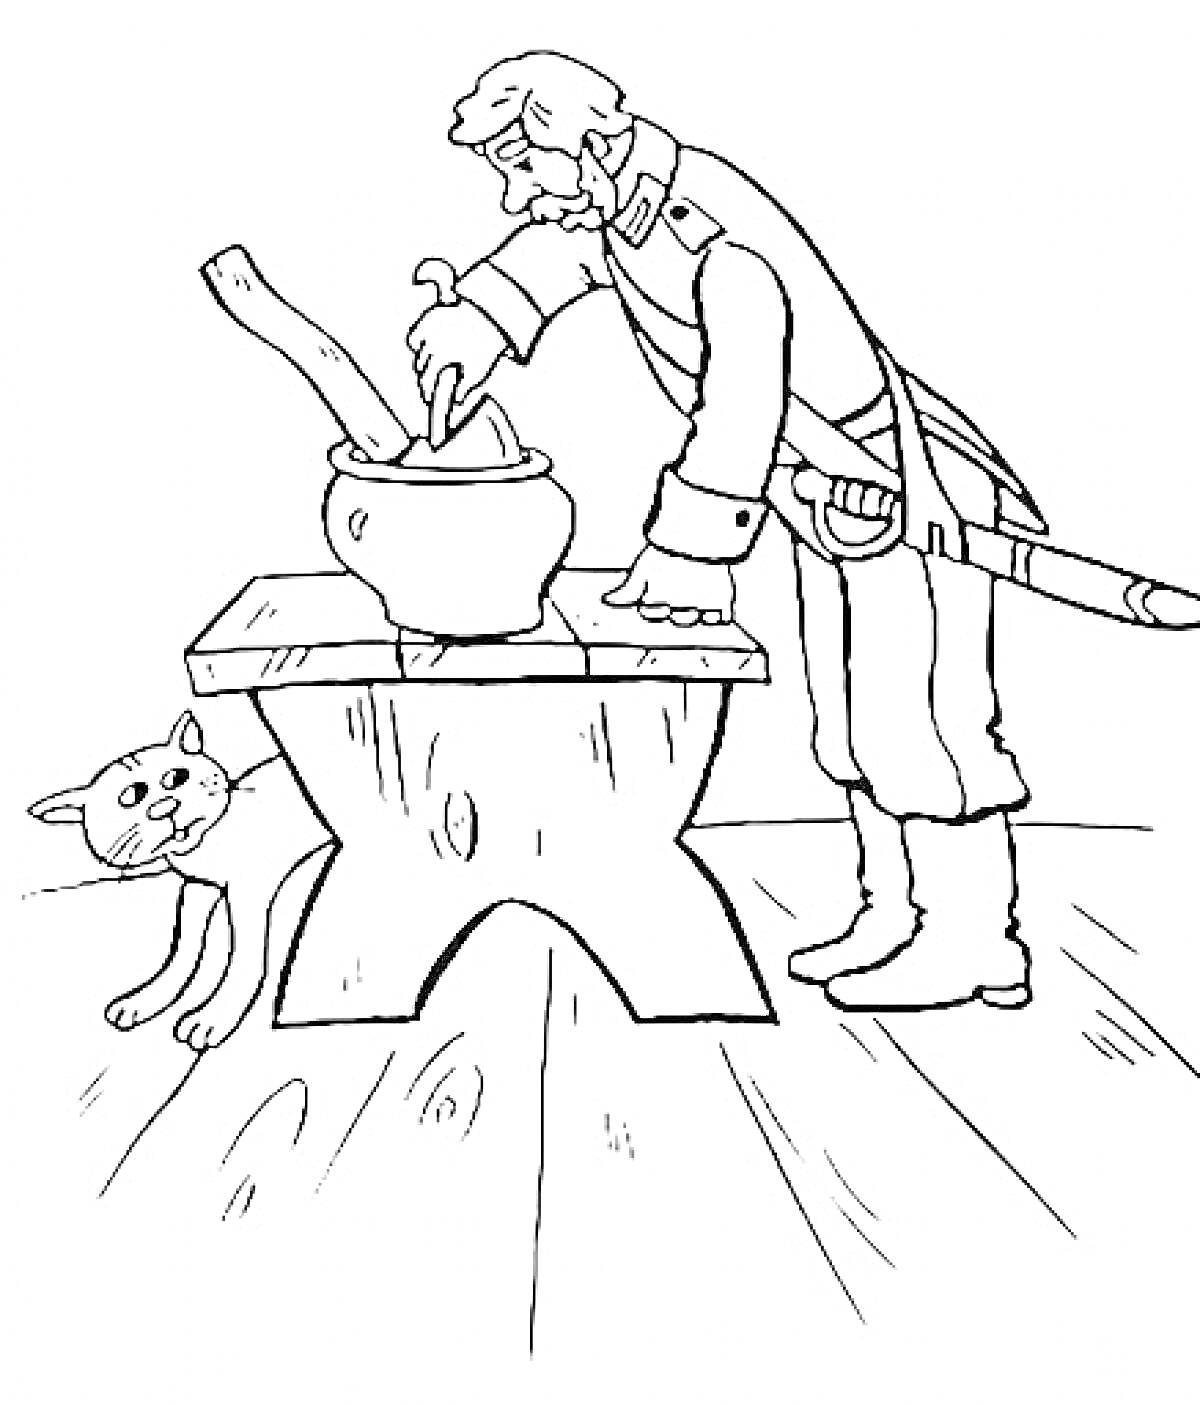 Раскраска Солдат у котелка на деревянном столе с топором в руке и кот рядом